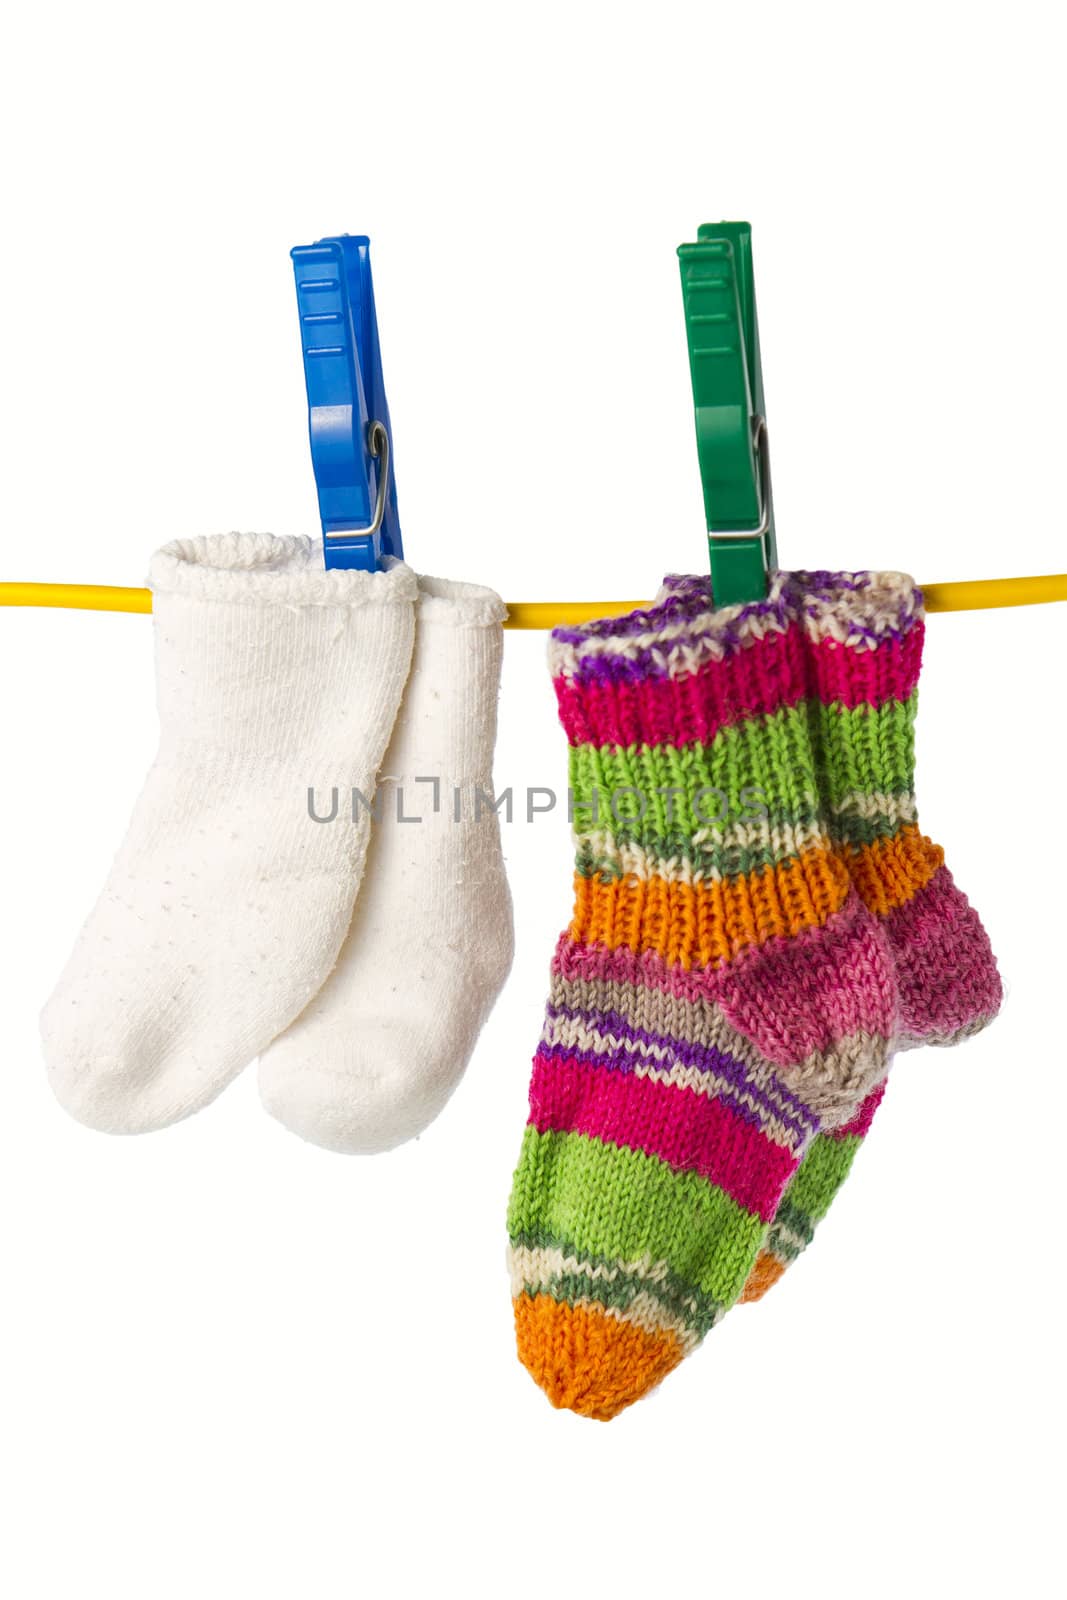 four socks on a clothesline by gewoldi